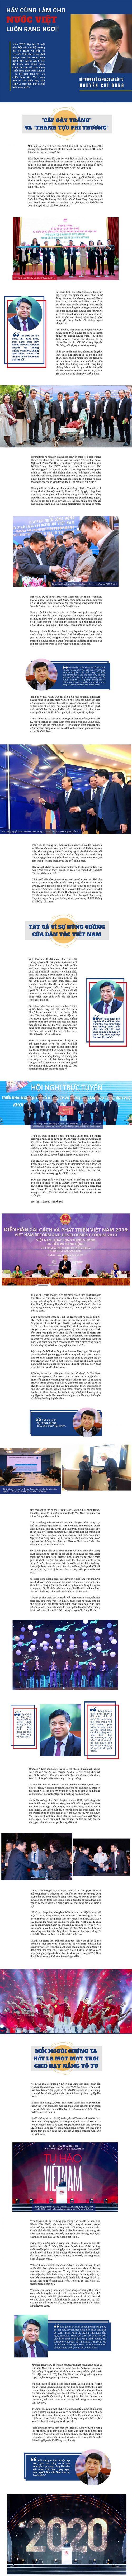 Bộ trưởng Bộ Kế hoạch và Đầu tư Nguyễn Chí Dũng: Hãy làm cho nước Việt luôn rạng ngời